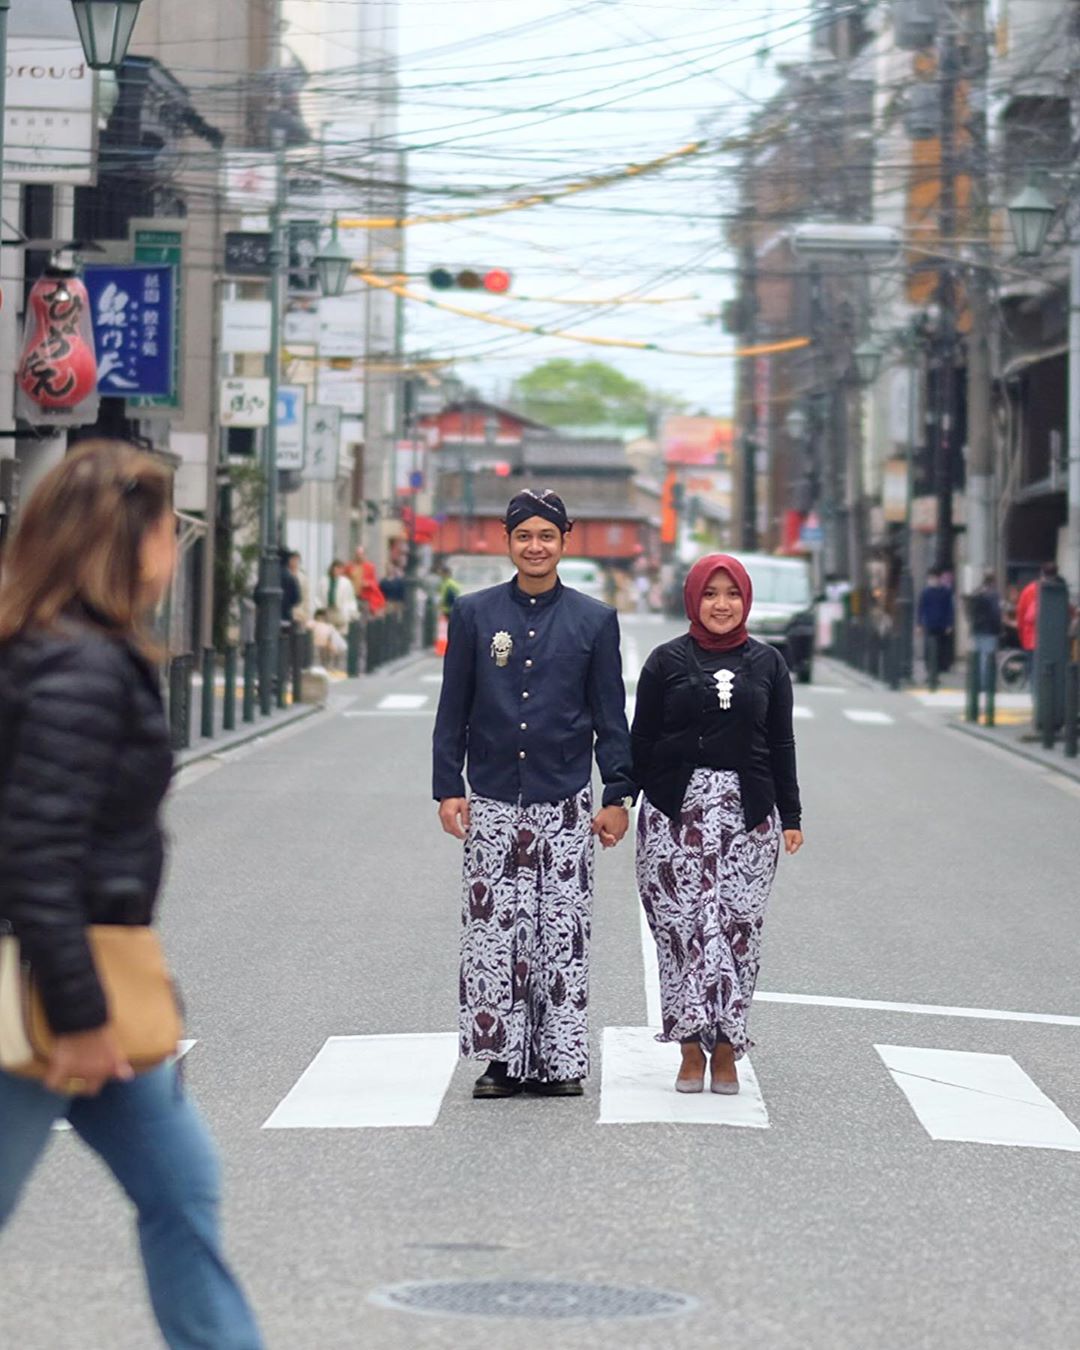 Calon Pengantin ini Foto Prawedding di Jepang Dengan Baju Adat Jawa